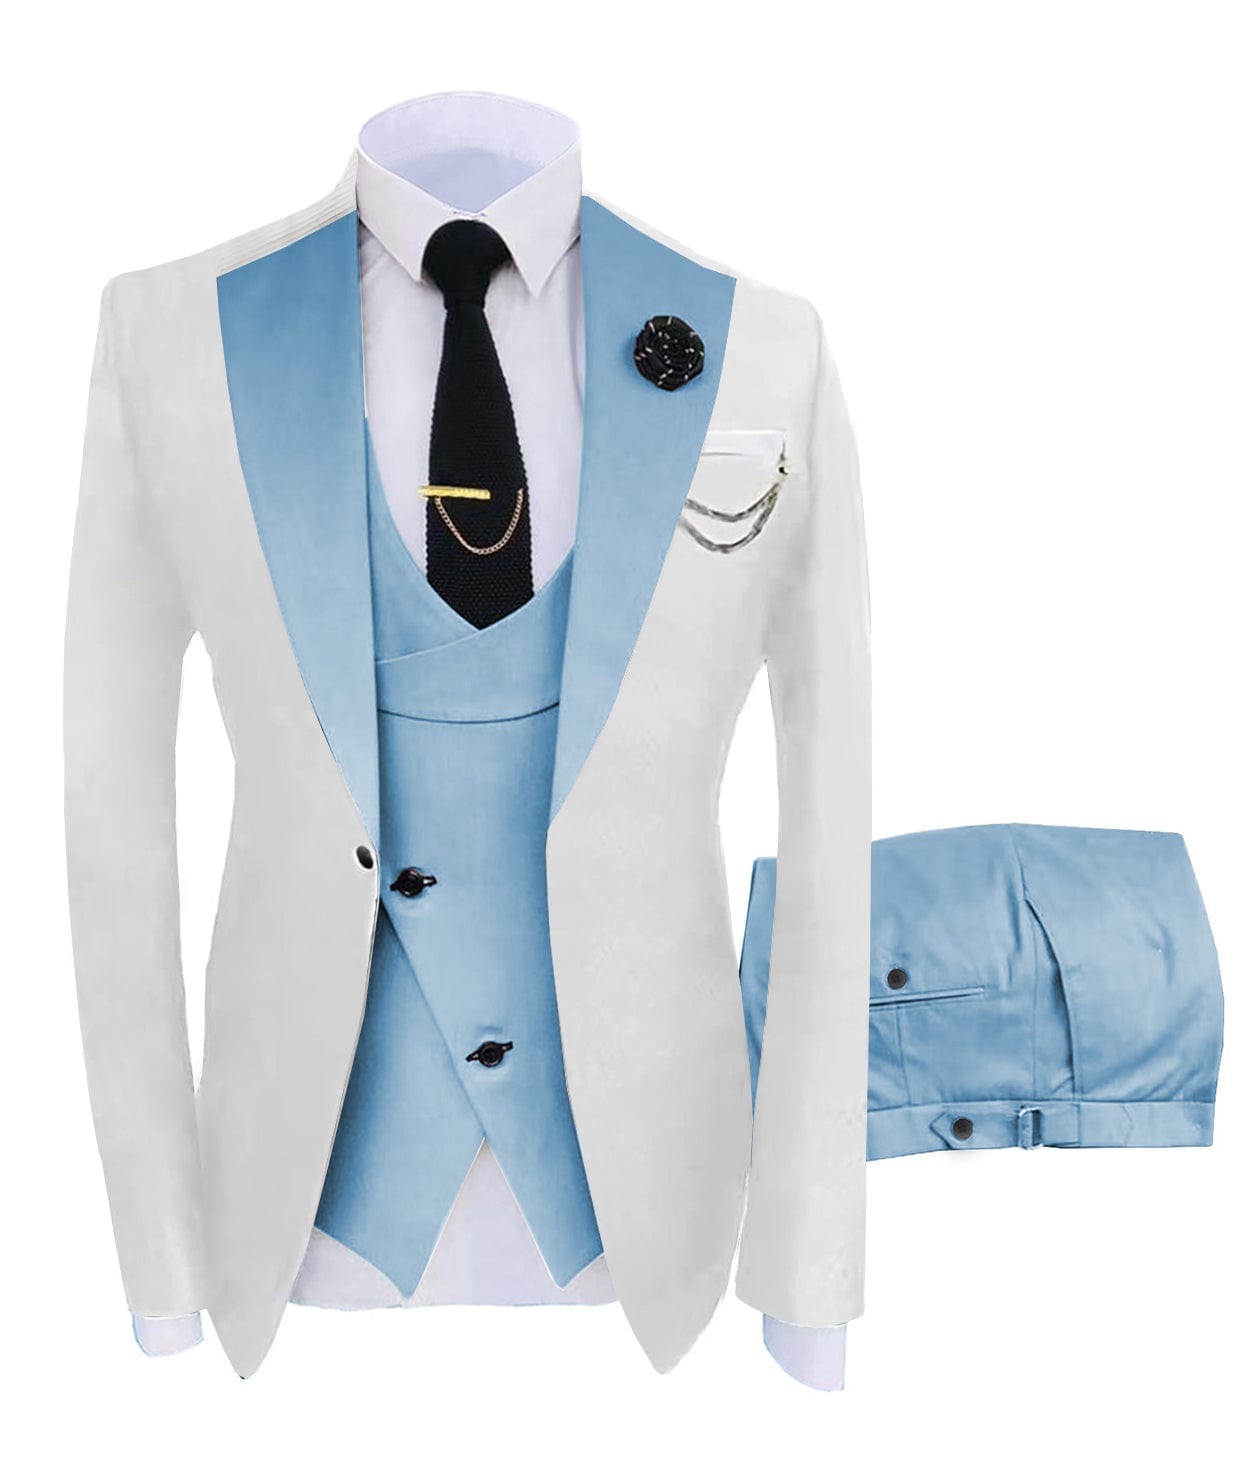 ceehuteey Men's 3 Piece Suits Slim Fit Notch Lapel Western Tuxedos (White Blazer+Vest+ Pant)